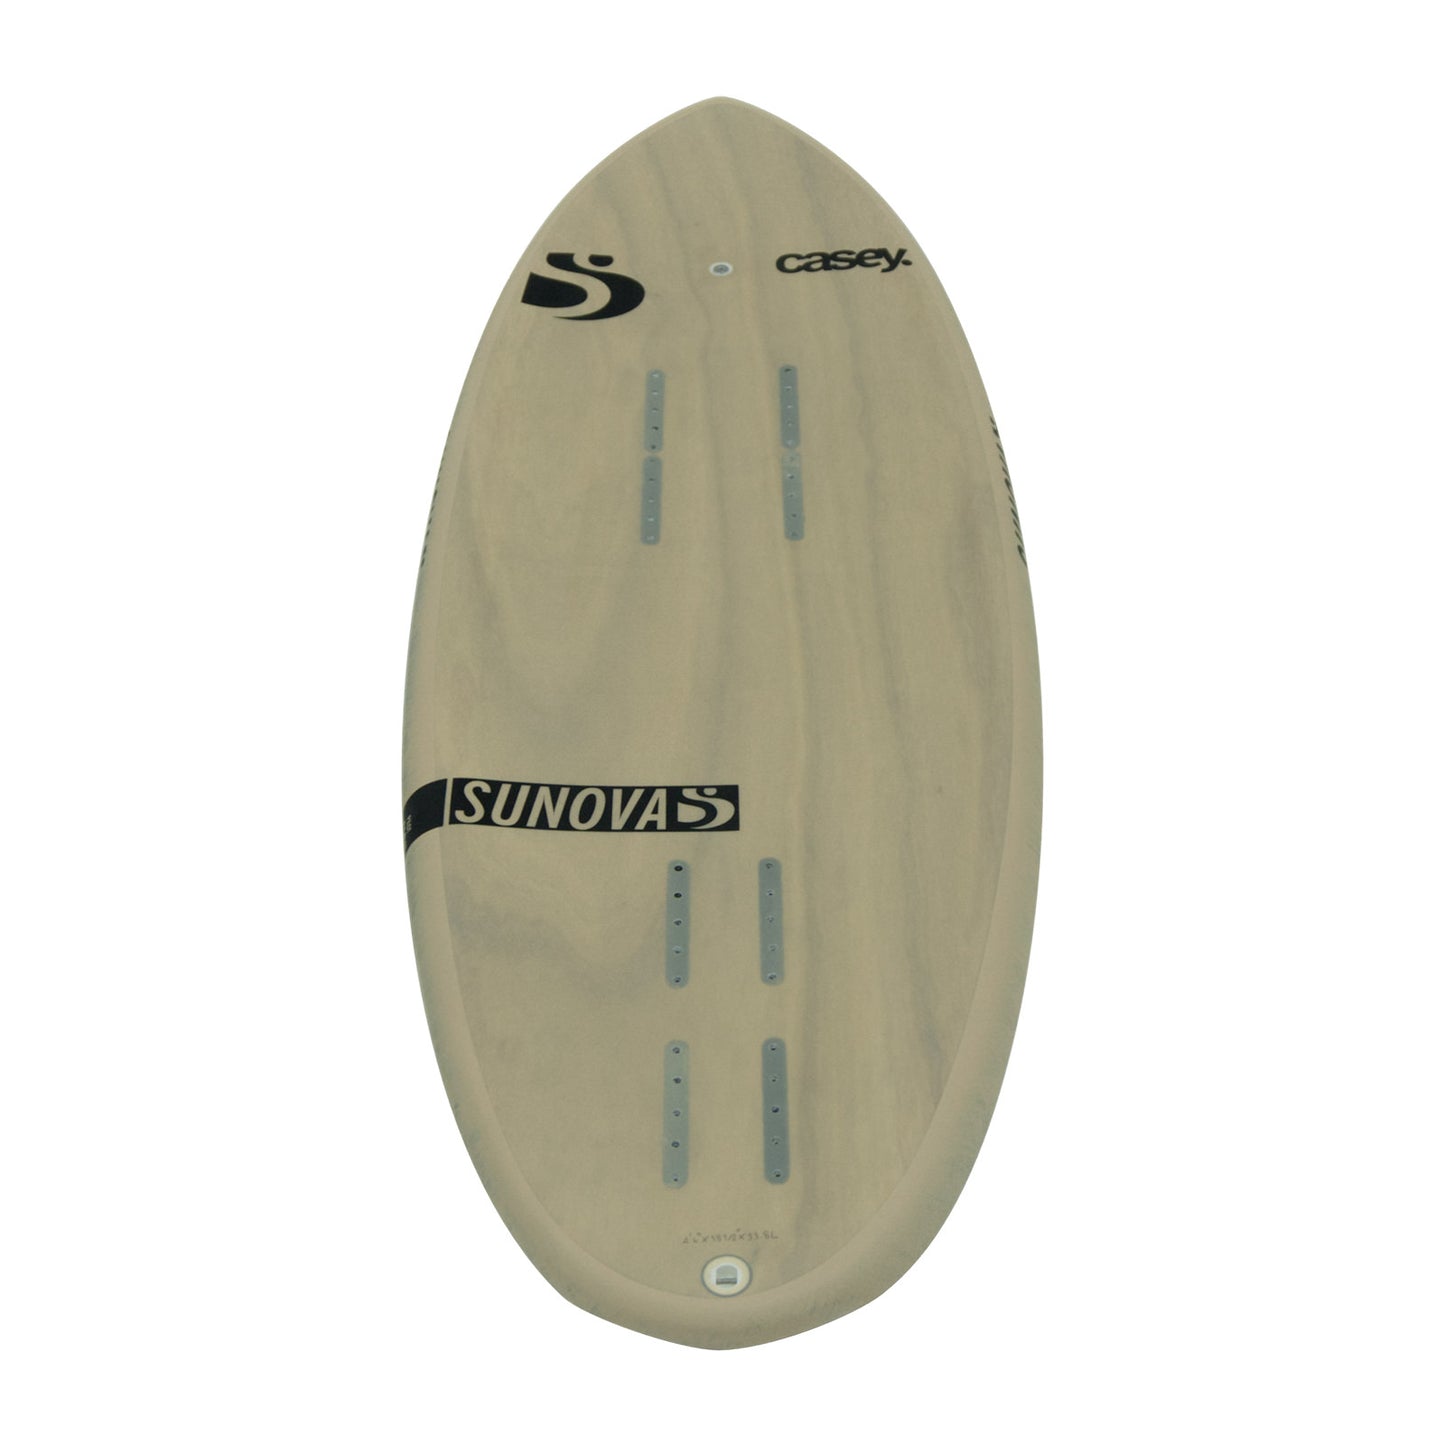 Heck Ansicht des Sunova Casey Pilot Surf Pronefoil Board in der TR3 Bauweise.